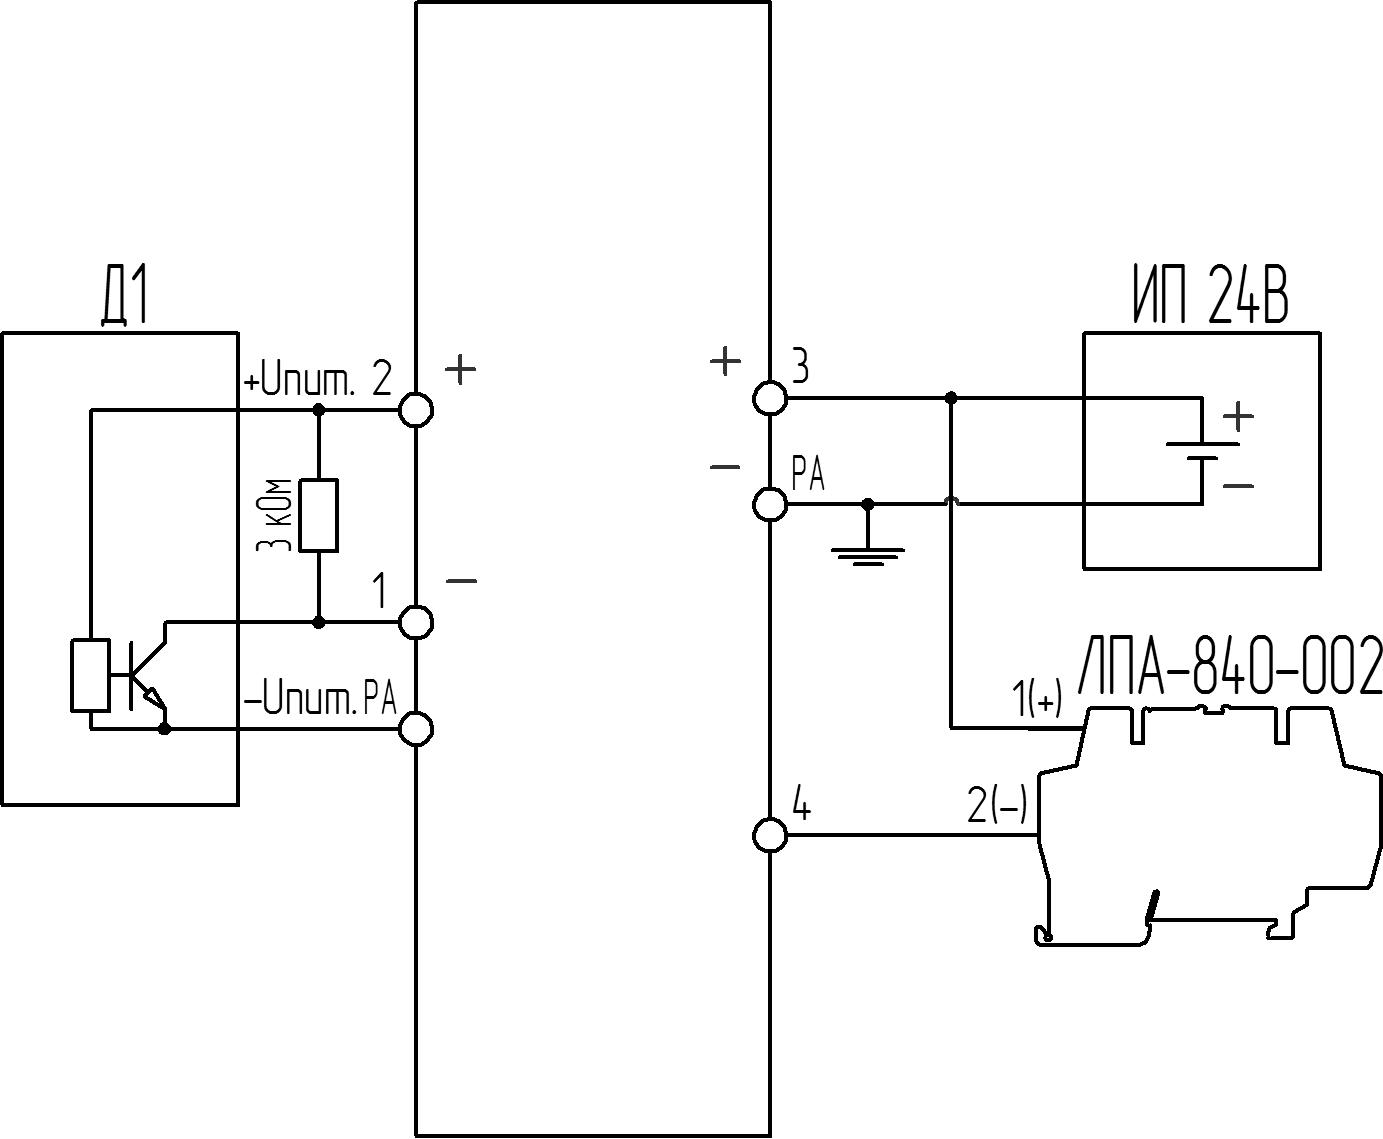 БИ-007 Схема подключения активного датчика с выходом типа «открытый коллектор» и модуля ЛПА-840-002